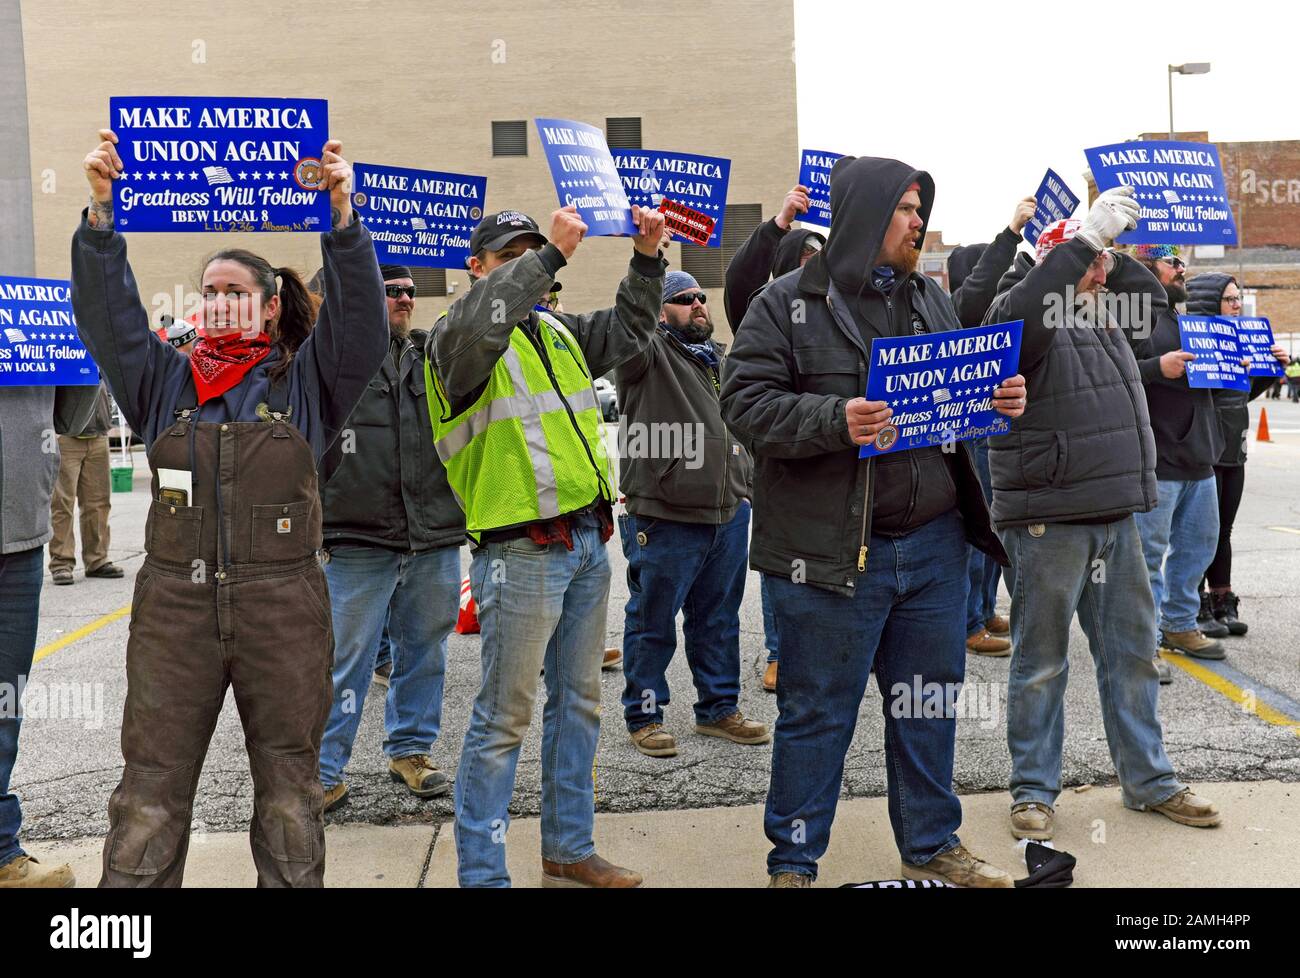 Rassemblement de travailleurs de l'Union américaine contre les politiques qui nuisent à l'atout de la classe ouvrière au cours de la Re-Trump 2020 rassemblement électoral à Toledo, Ohio, USA. Banque D'Images